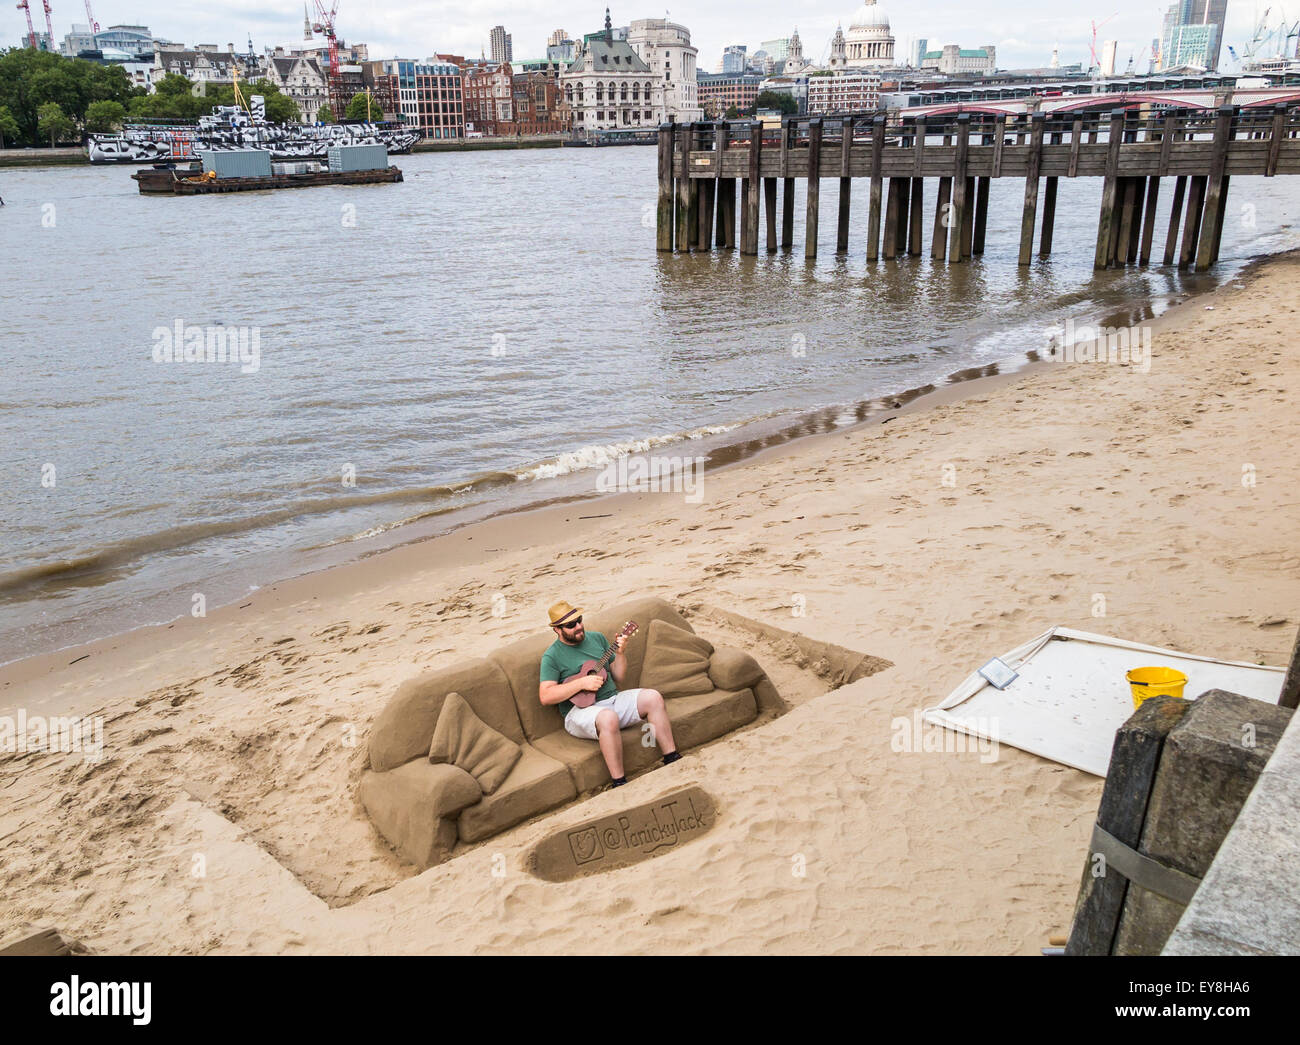 Scultore di sabbia, rendendo le sculture per suggerimenti, suonando una chitarra su un divano di sabbia, South Bank del terrapieno, London, Regno Unito Foto Stock